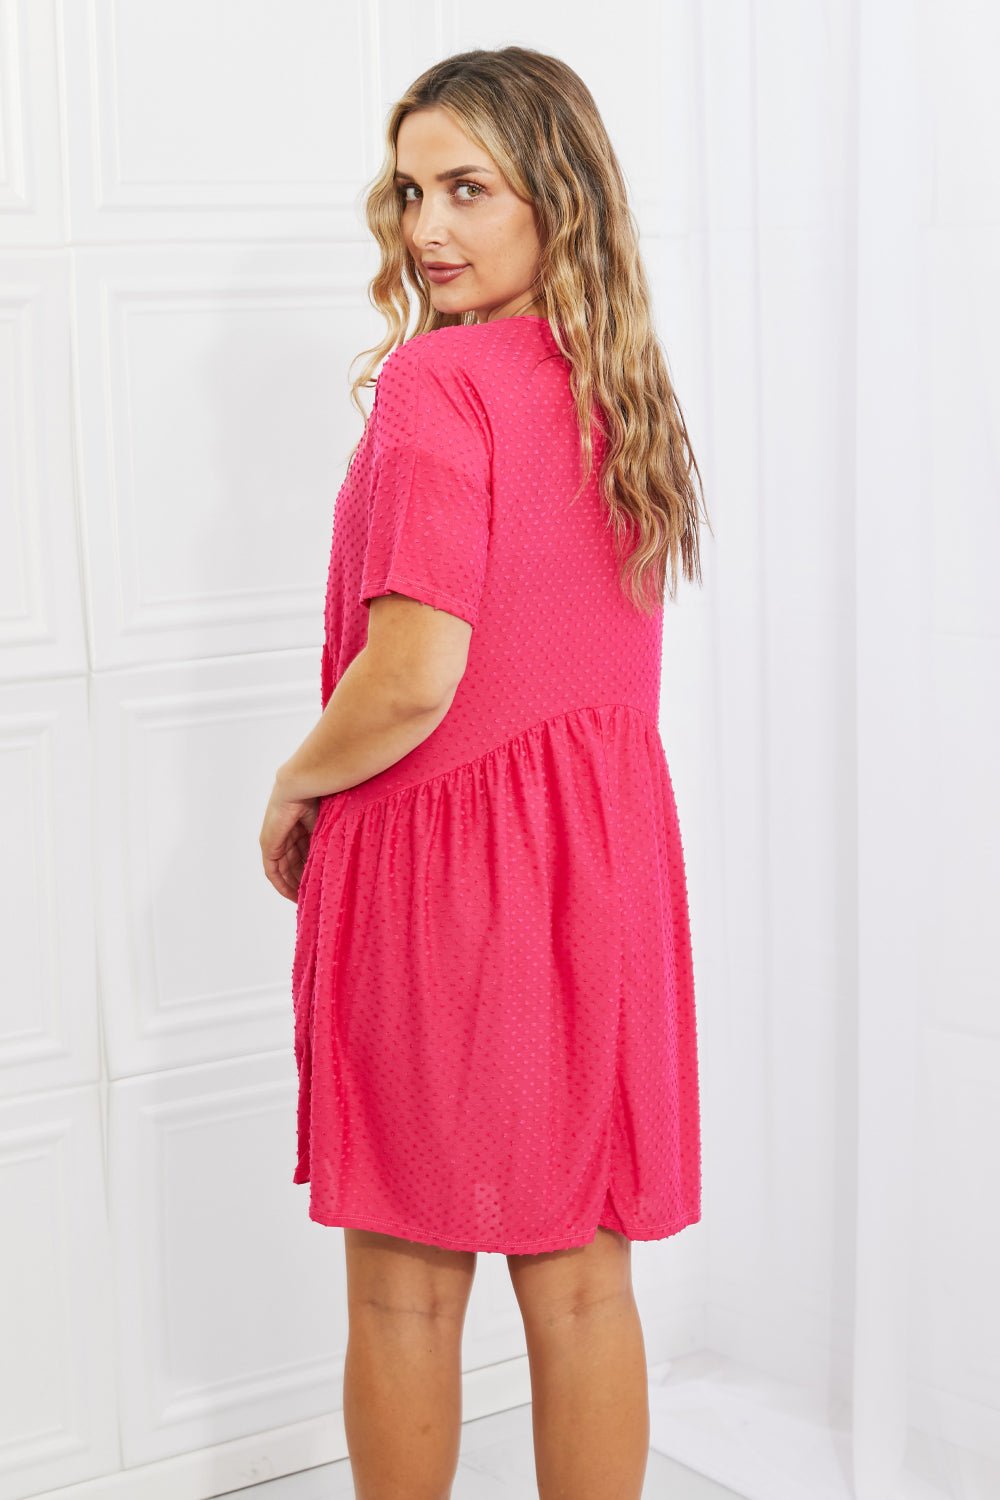 Swiss Dot Casual Knee-Length Dress in Hot PinkKnee-Length DressBOMBOM